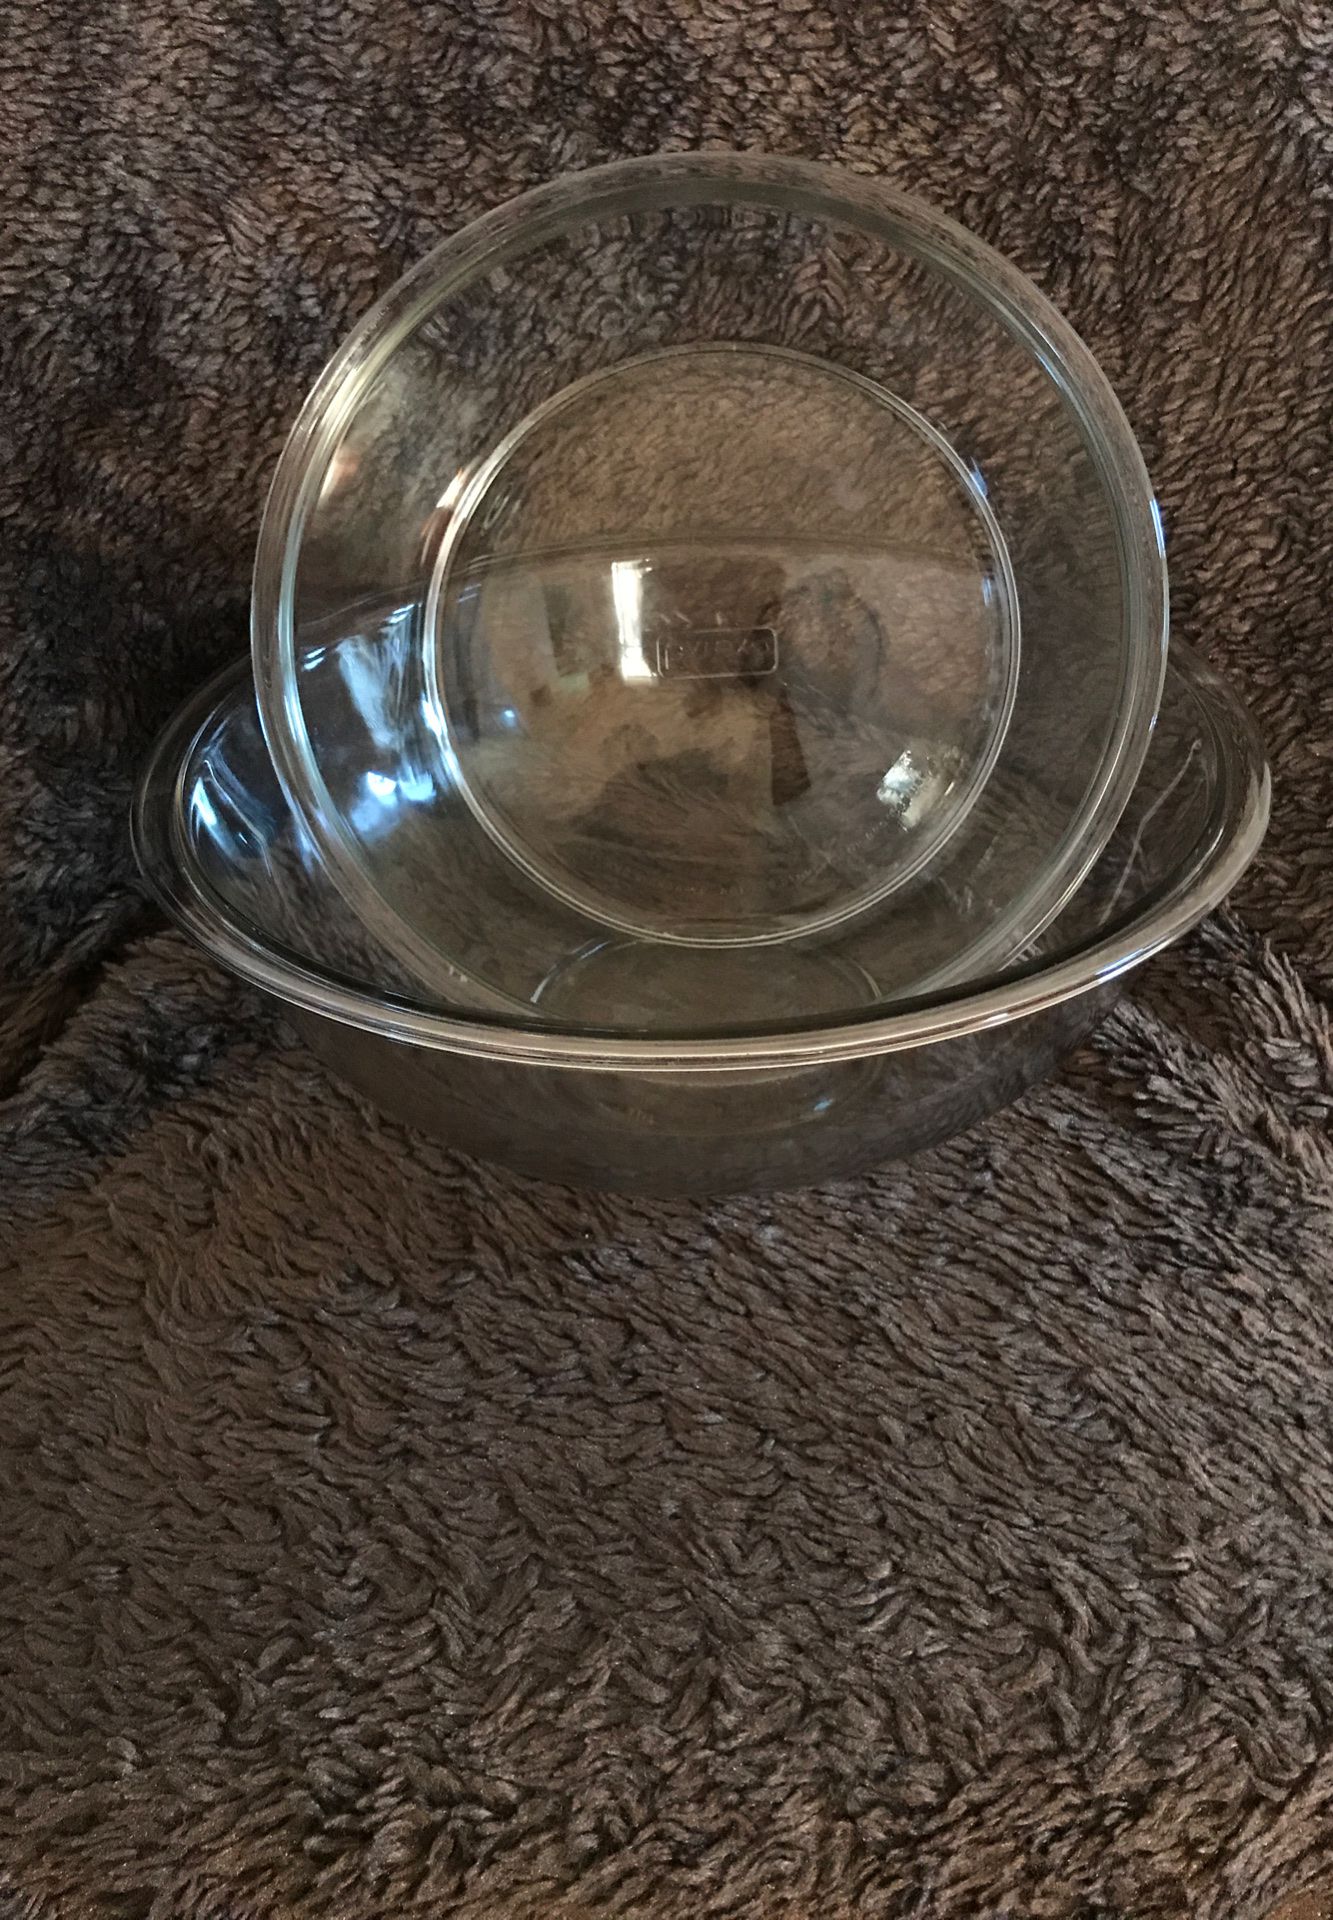 Pyrex glass bowls